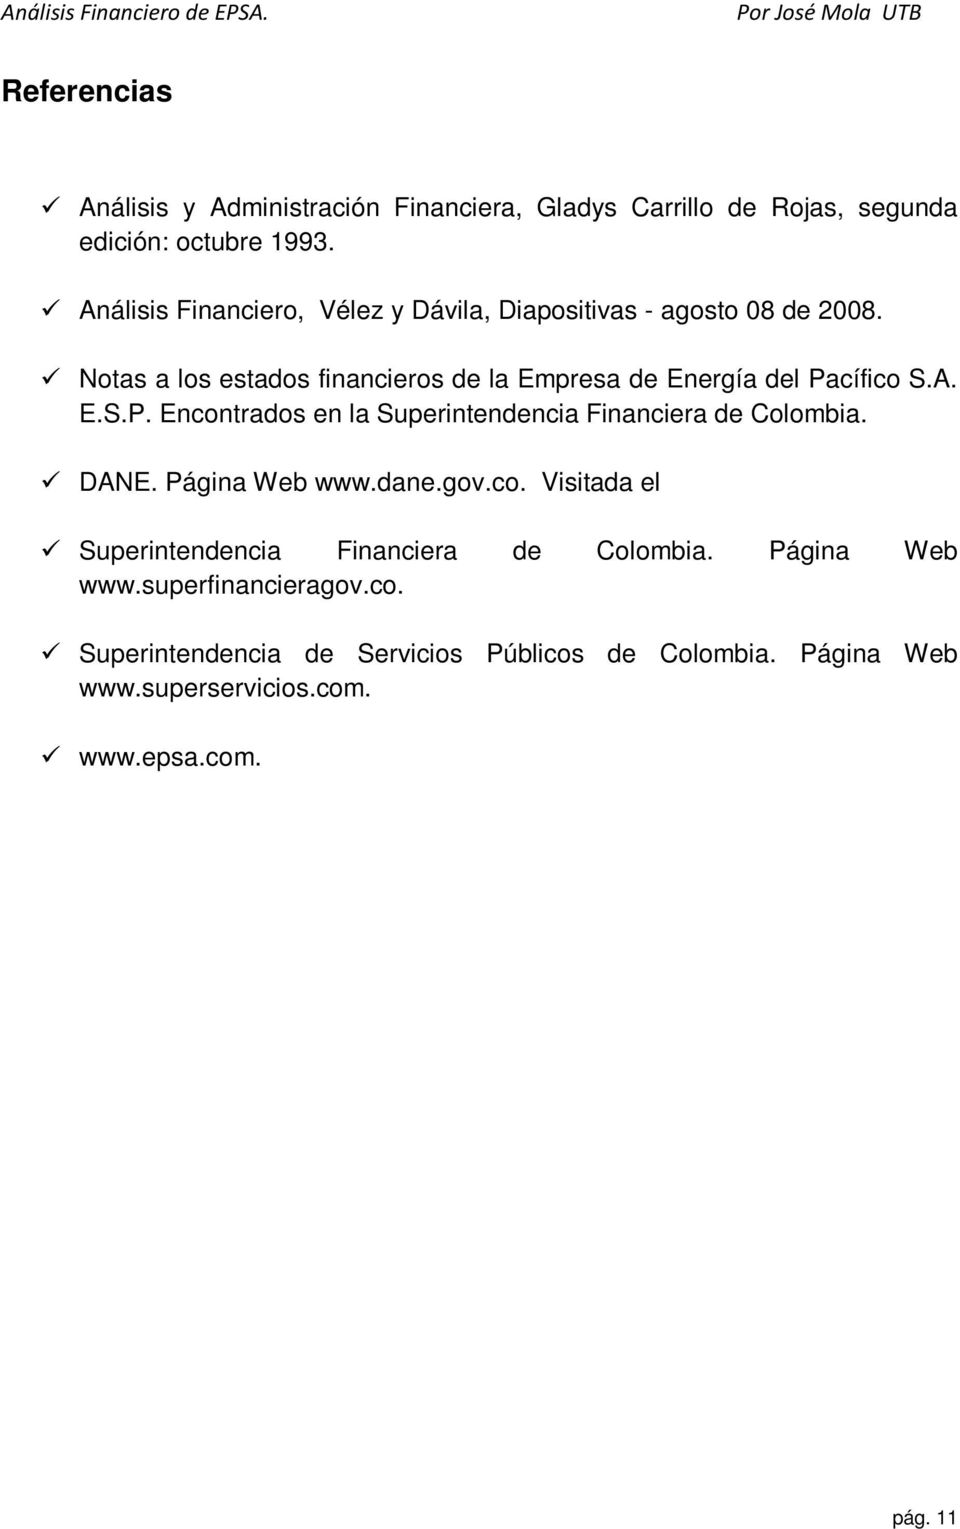 Notas a los estados financieros de la Empresa de Energía del Pacífico S.A. E.S.P. Encontrados en la Superintendencia Financiera de Colombia.